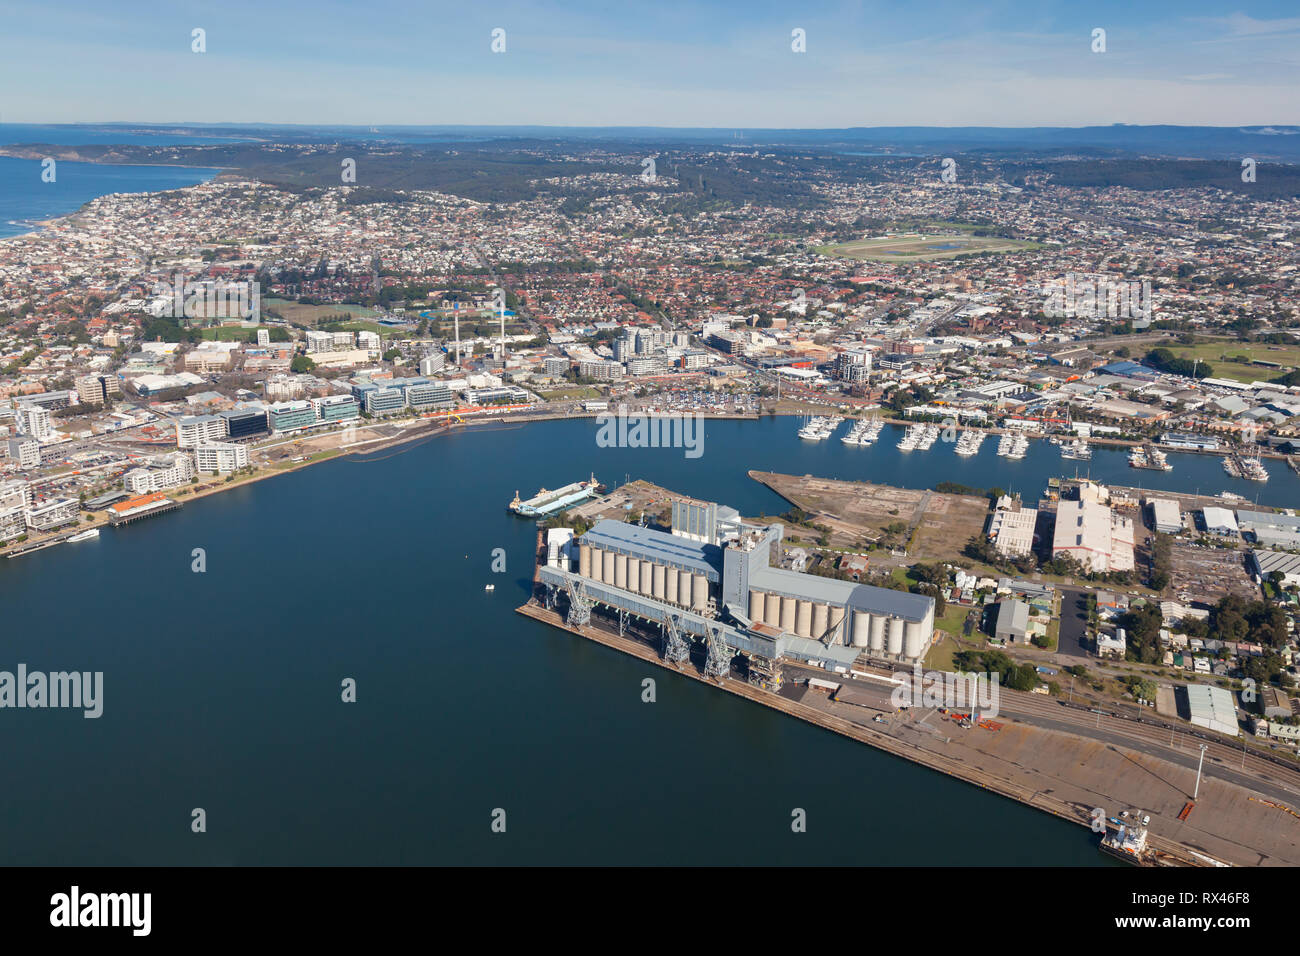 Vista aerea del porto di Newcastle e città guardando a sud attraverso la parte interna della città sobborghi. Nuovo commerciale e sviluppo residenziale può essere visto lungo t Foto Stock